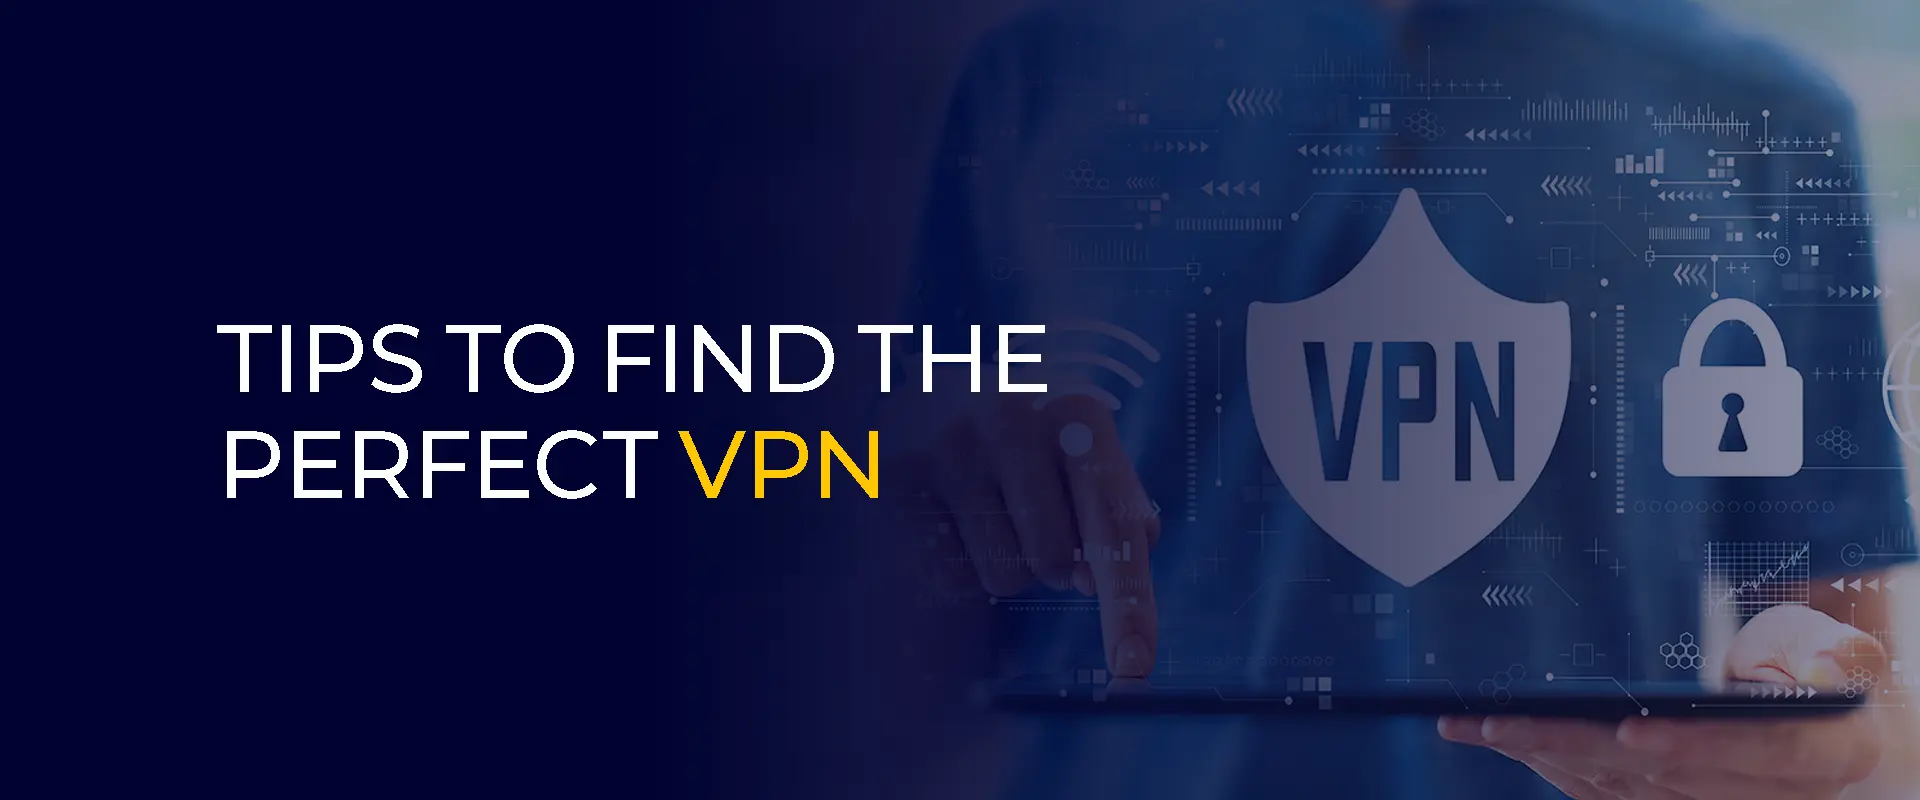 Suggerimenti per trovare la VPN perfetta